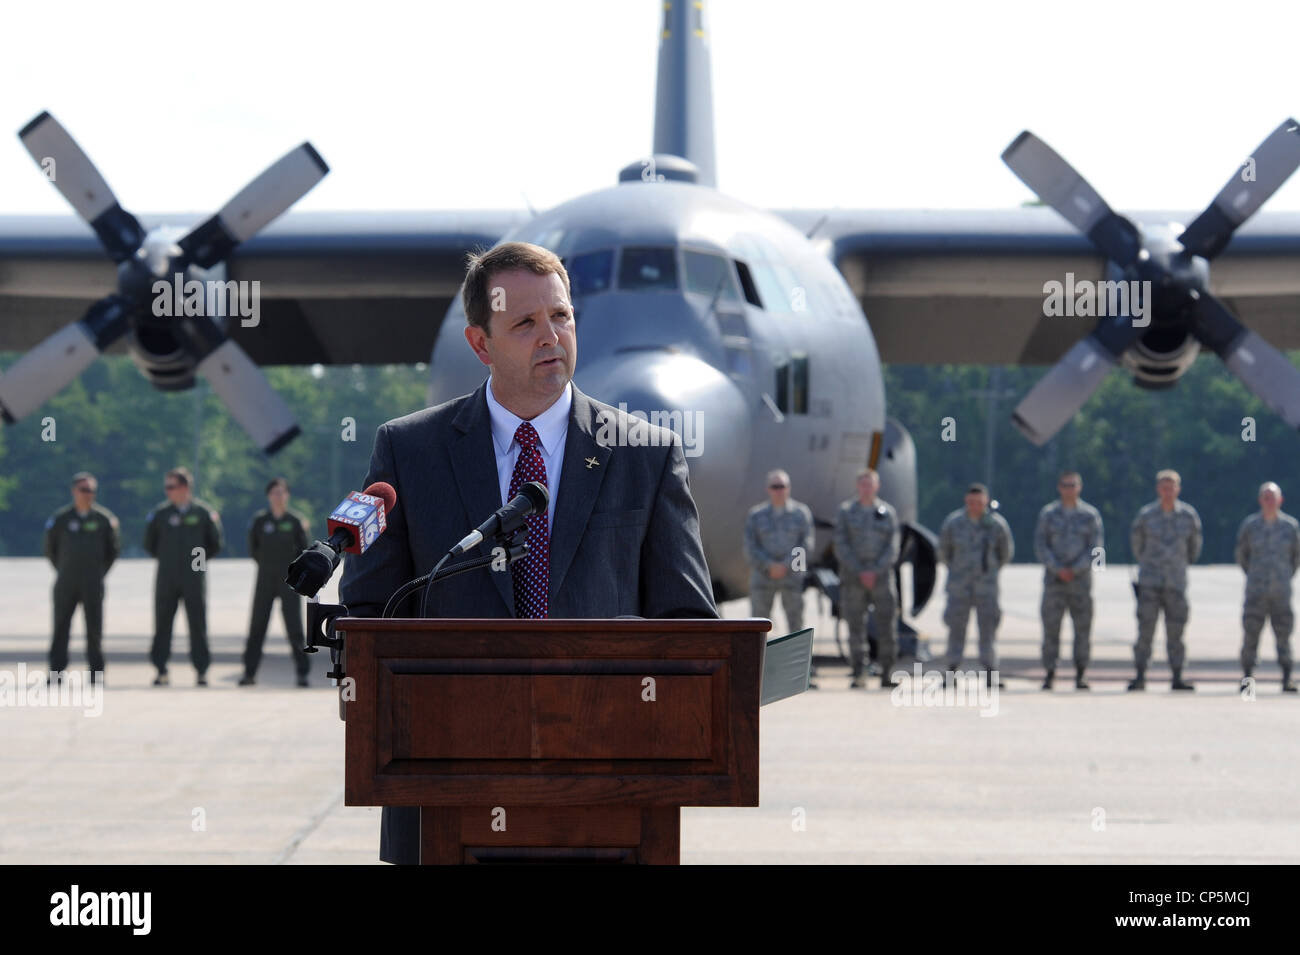 Fred Ross, Vizepräsident der C-130 Programme für Lockheed Martin, spricht mit einem Publikum an der Abgang von C 130 E 61-2358, Mai 1, 2012, in Little Rock Air Force Base, Arche. Stockfoto